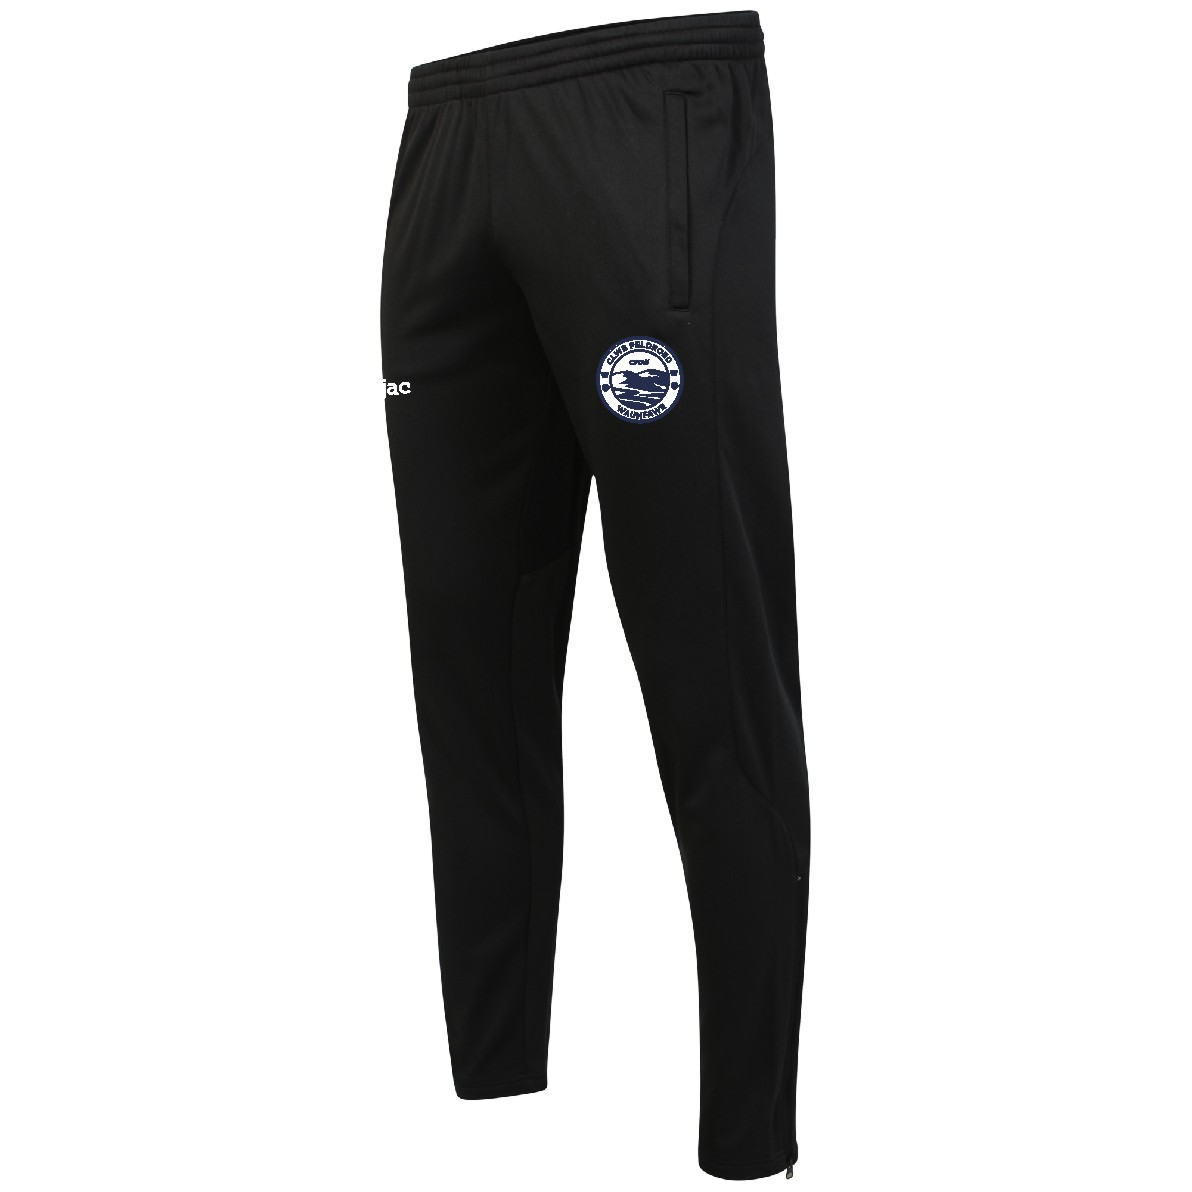 CPD Waunfawr FC Skinny Technical Pants - Teejac